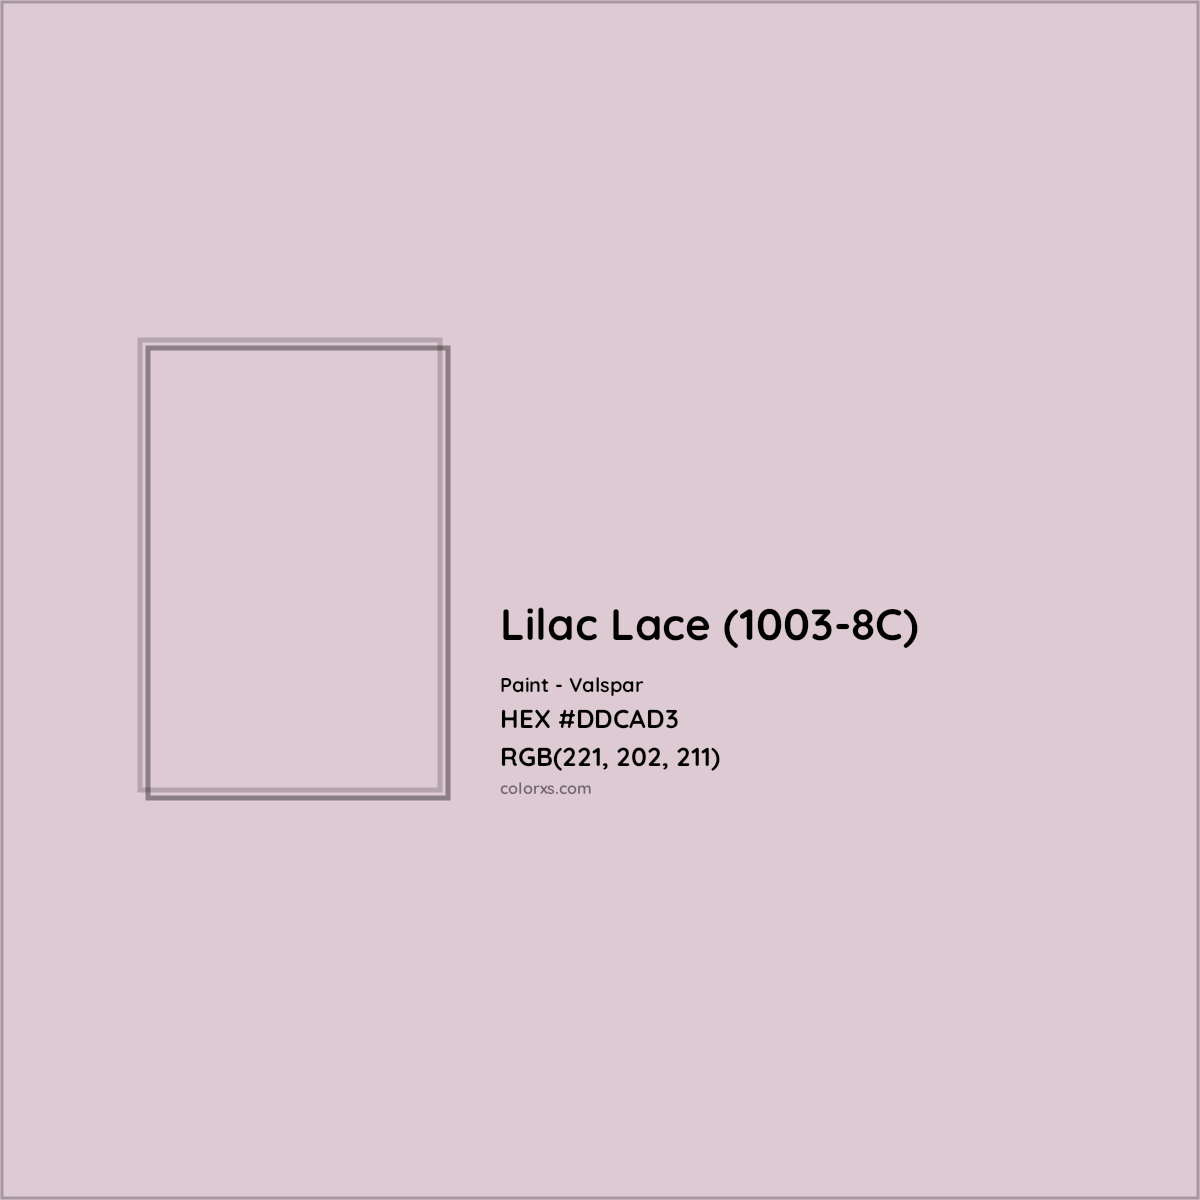 HEX #DDCAD3 Lilac Lace (1003-8C) Paint Valspar - Color Code